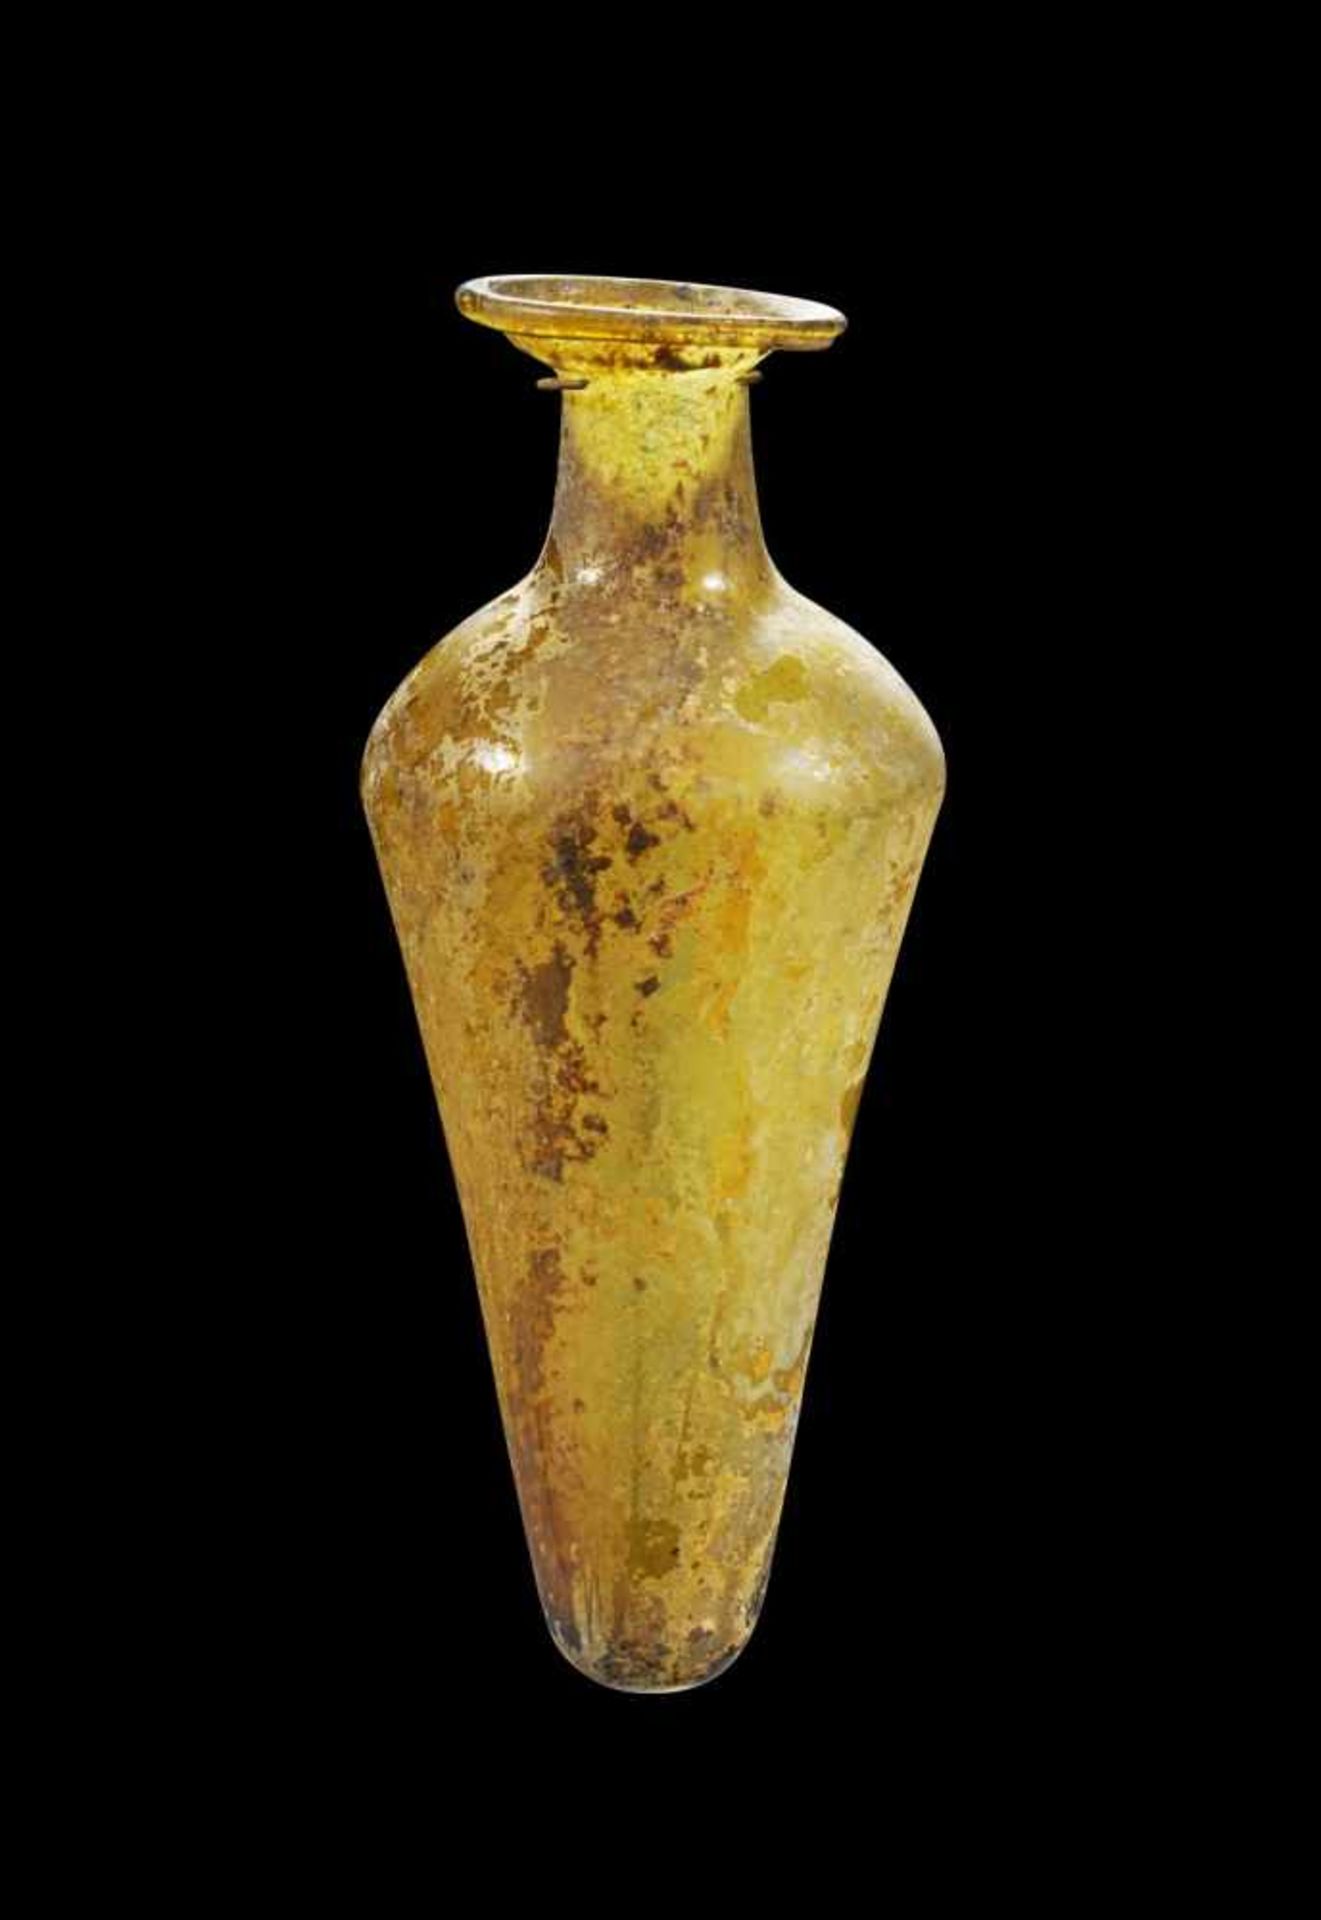 Elegante konische Flasche. Östlicher Mittelmeerraum, 3. - 4. Jh. n. Chr. H 16,7cm. Aus hellbraunem